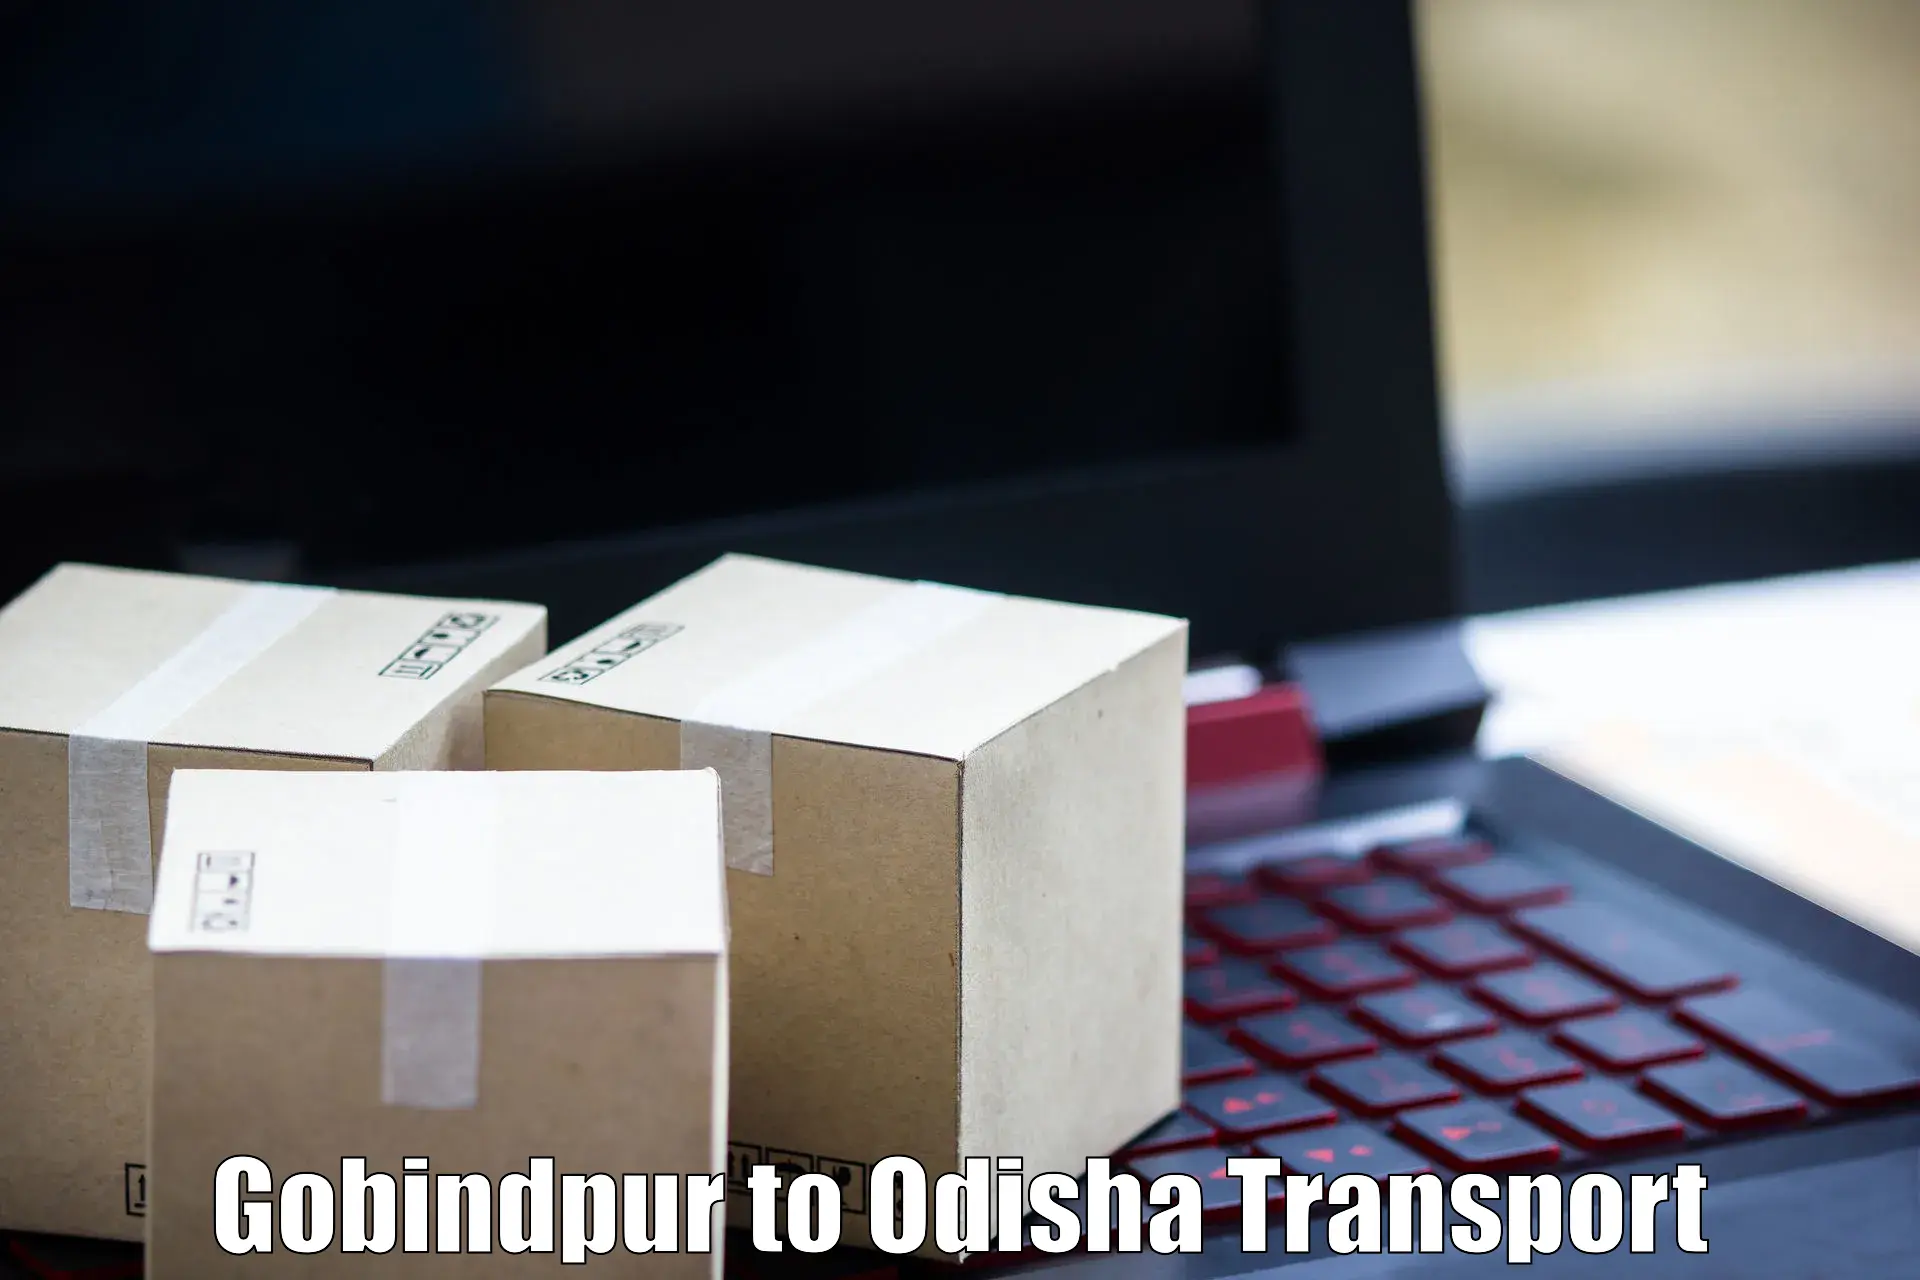 Transport shared services Gobindpur to Ukhunda